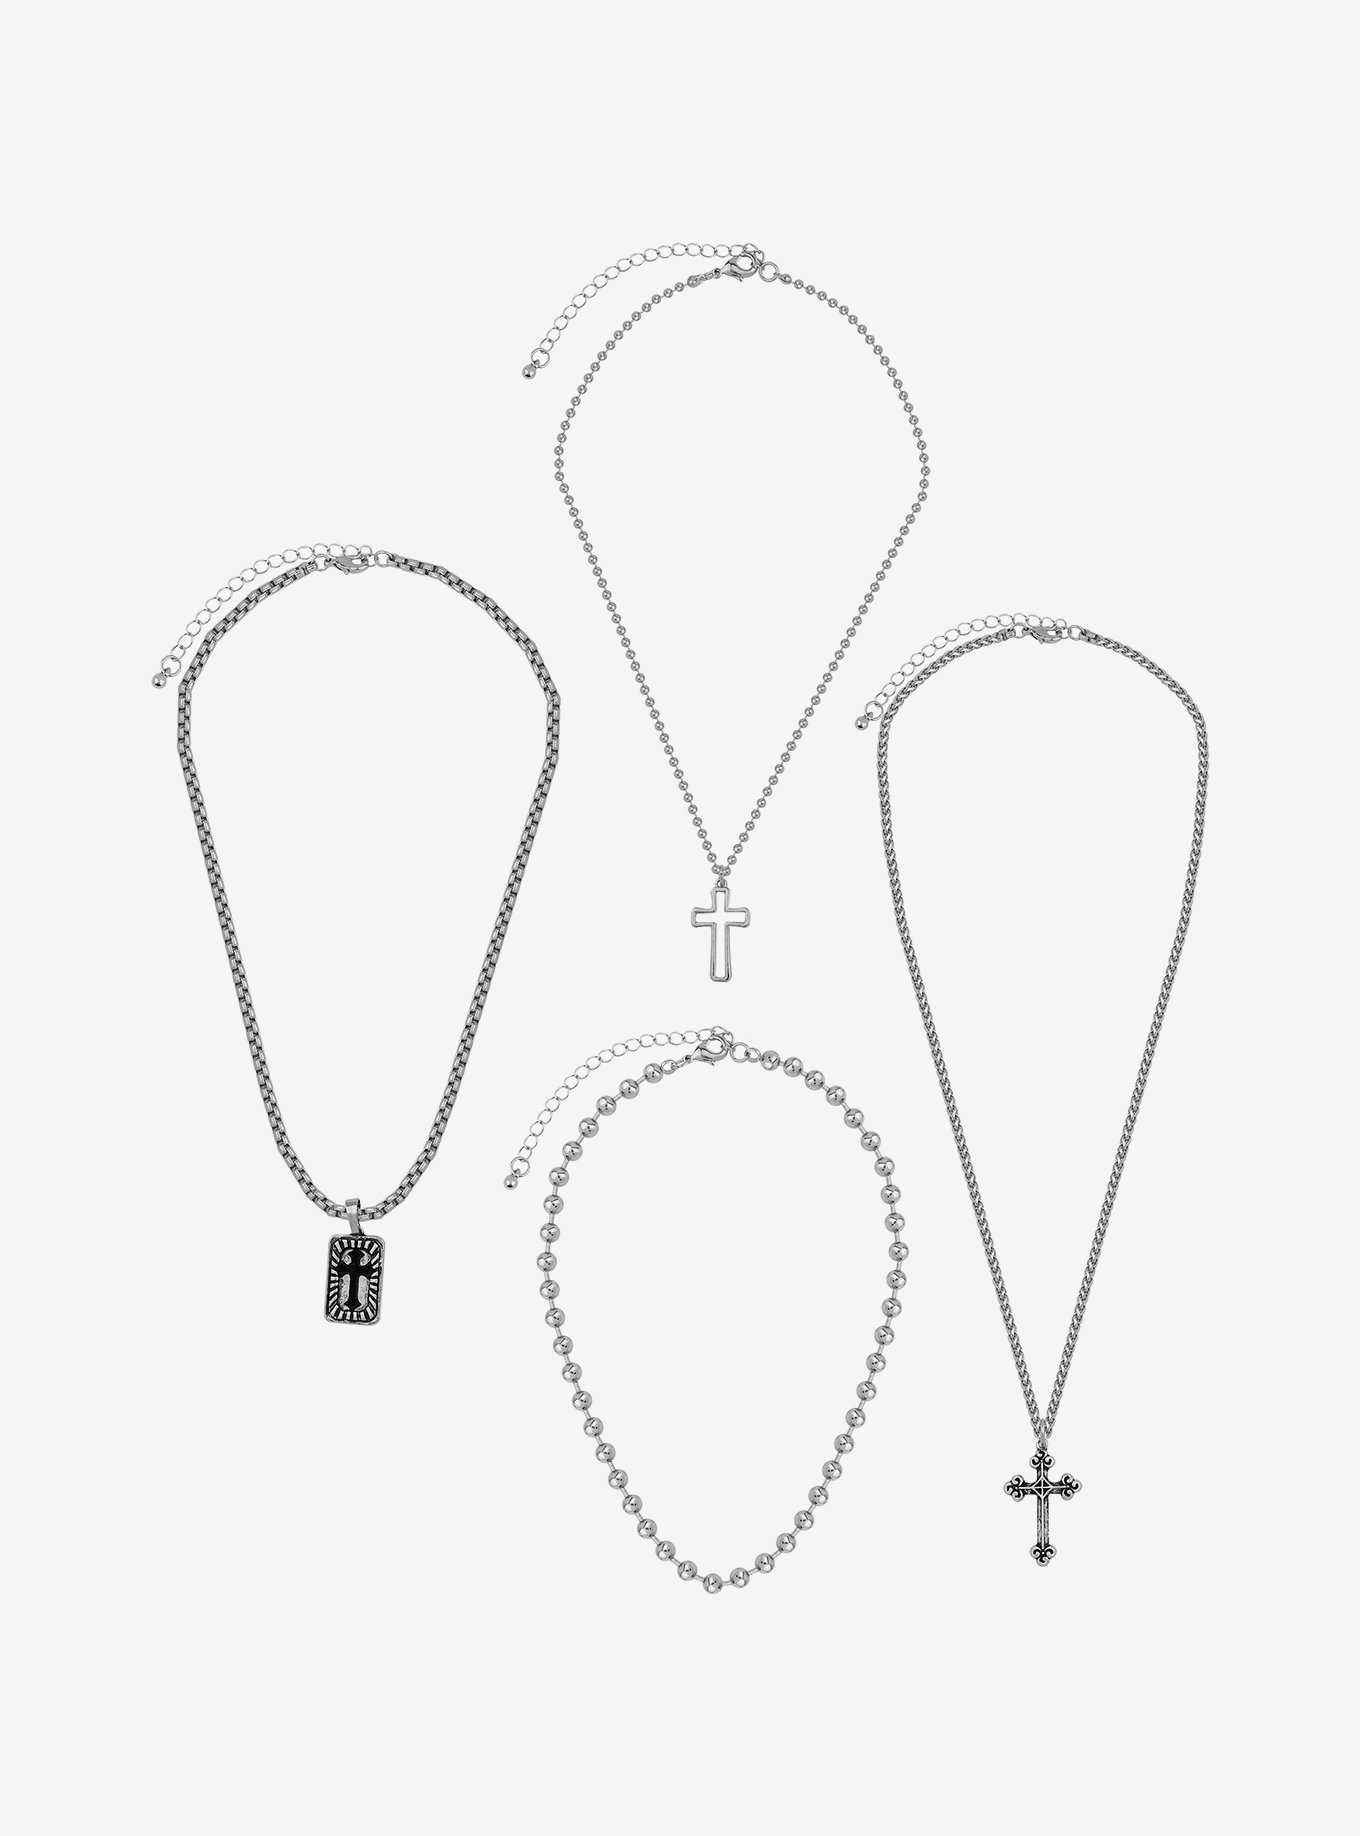 Social Collision® Cross Chain Necklace Set, , hi-res